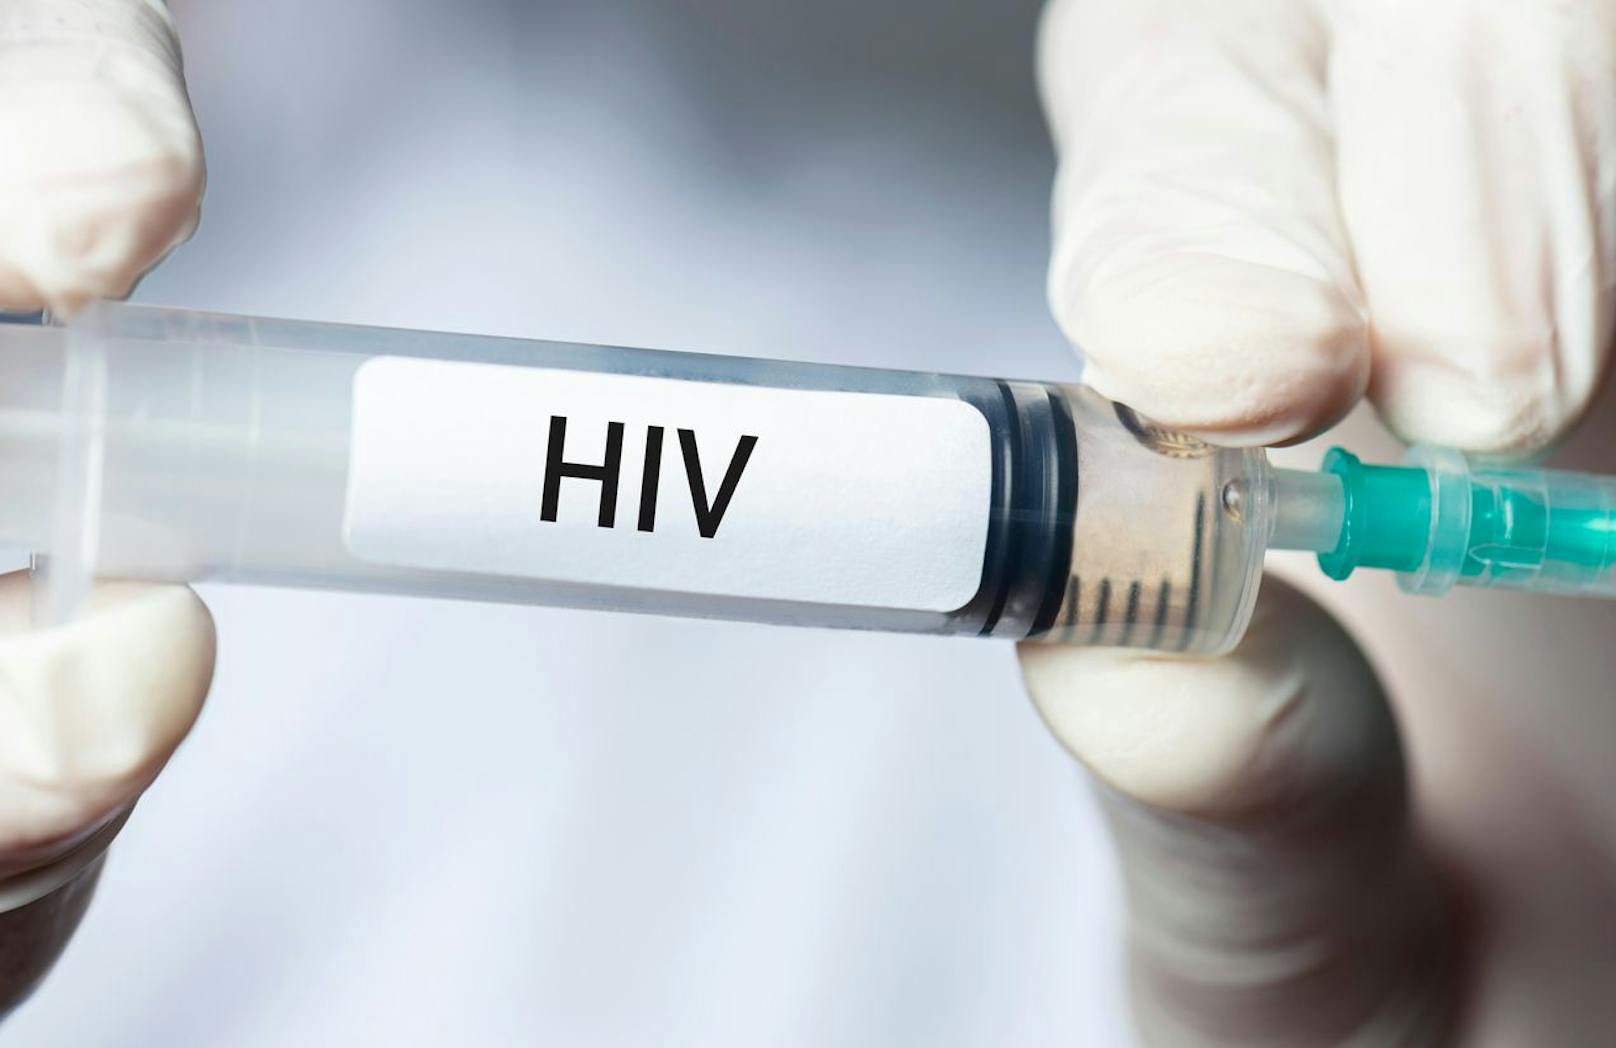 Forscher versuchen seit fast 40 Jahren, einen <a data-li-document-ref="100176706" href="https://www.heute.at/s/warum-es-noch-immer-keinen-impfstoff-gegen-hiv-gibt-100176706">HIV-Impfstoff</a> zu entwickeln.